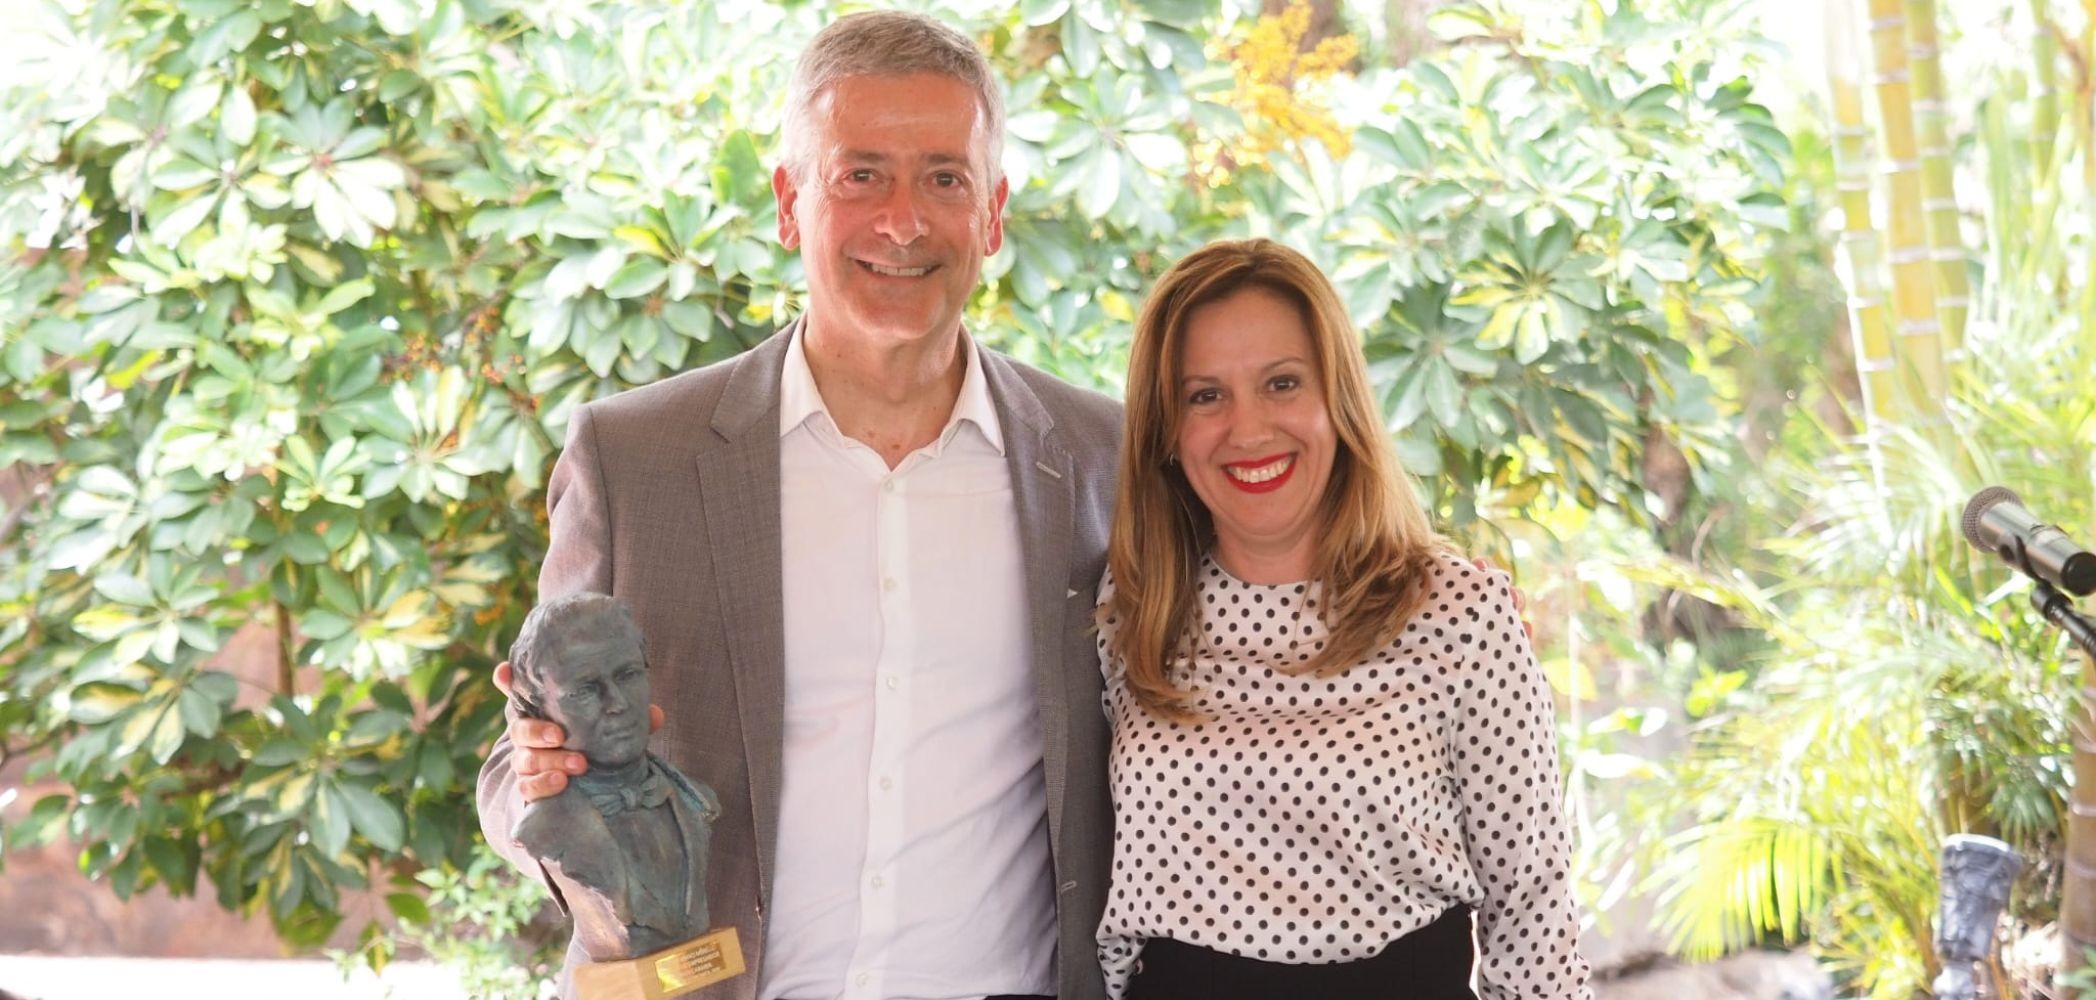 El Círculo de Gran Canaria, Premio Bravo Murillo por su defensa del fuero canario